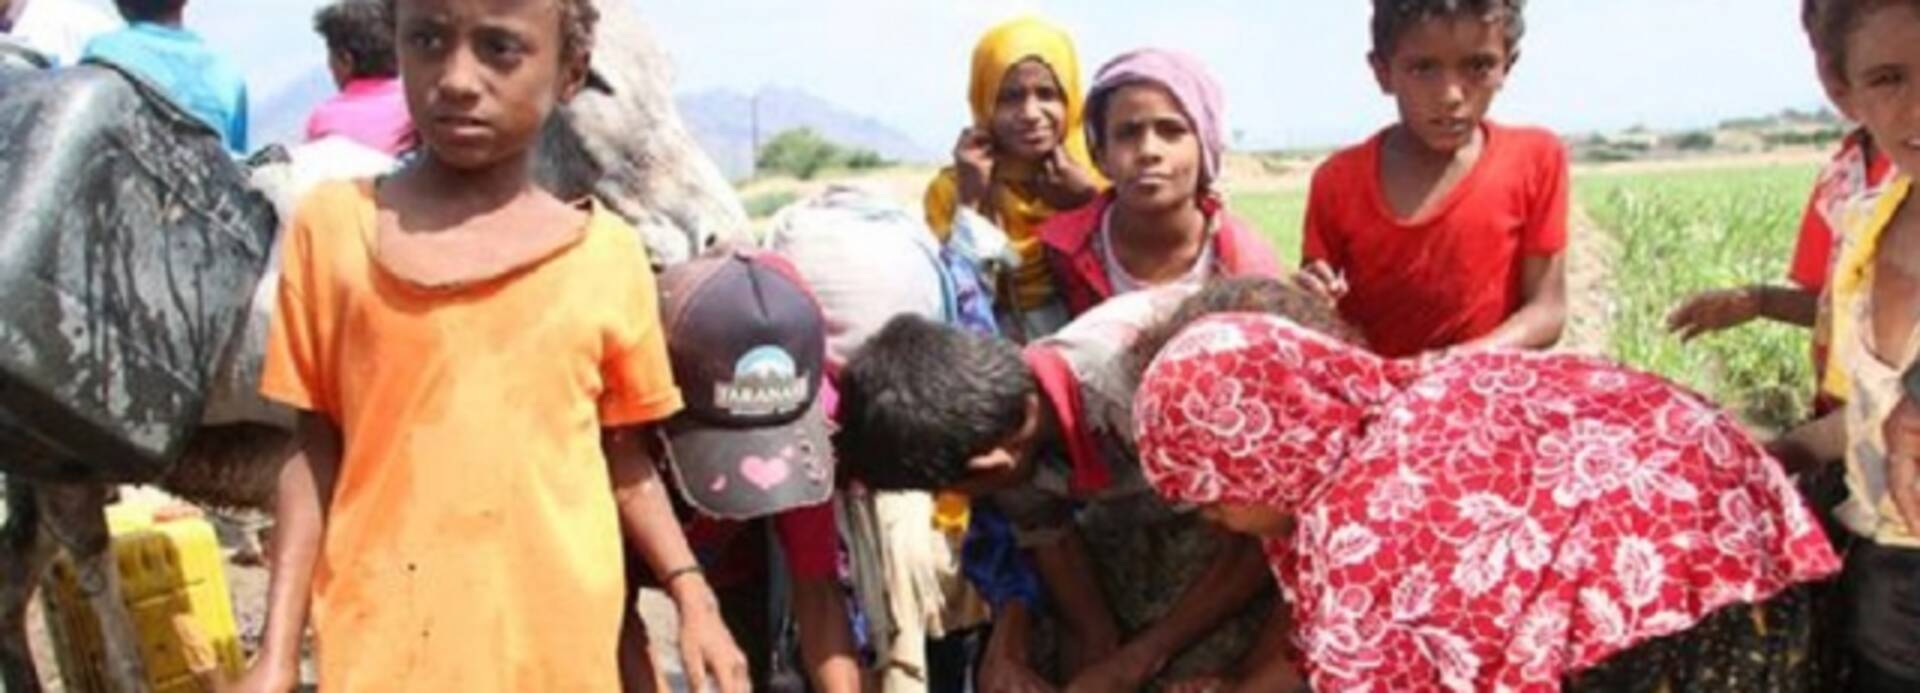 Eine Gruppen Menschen im Jemen